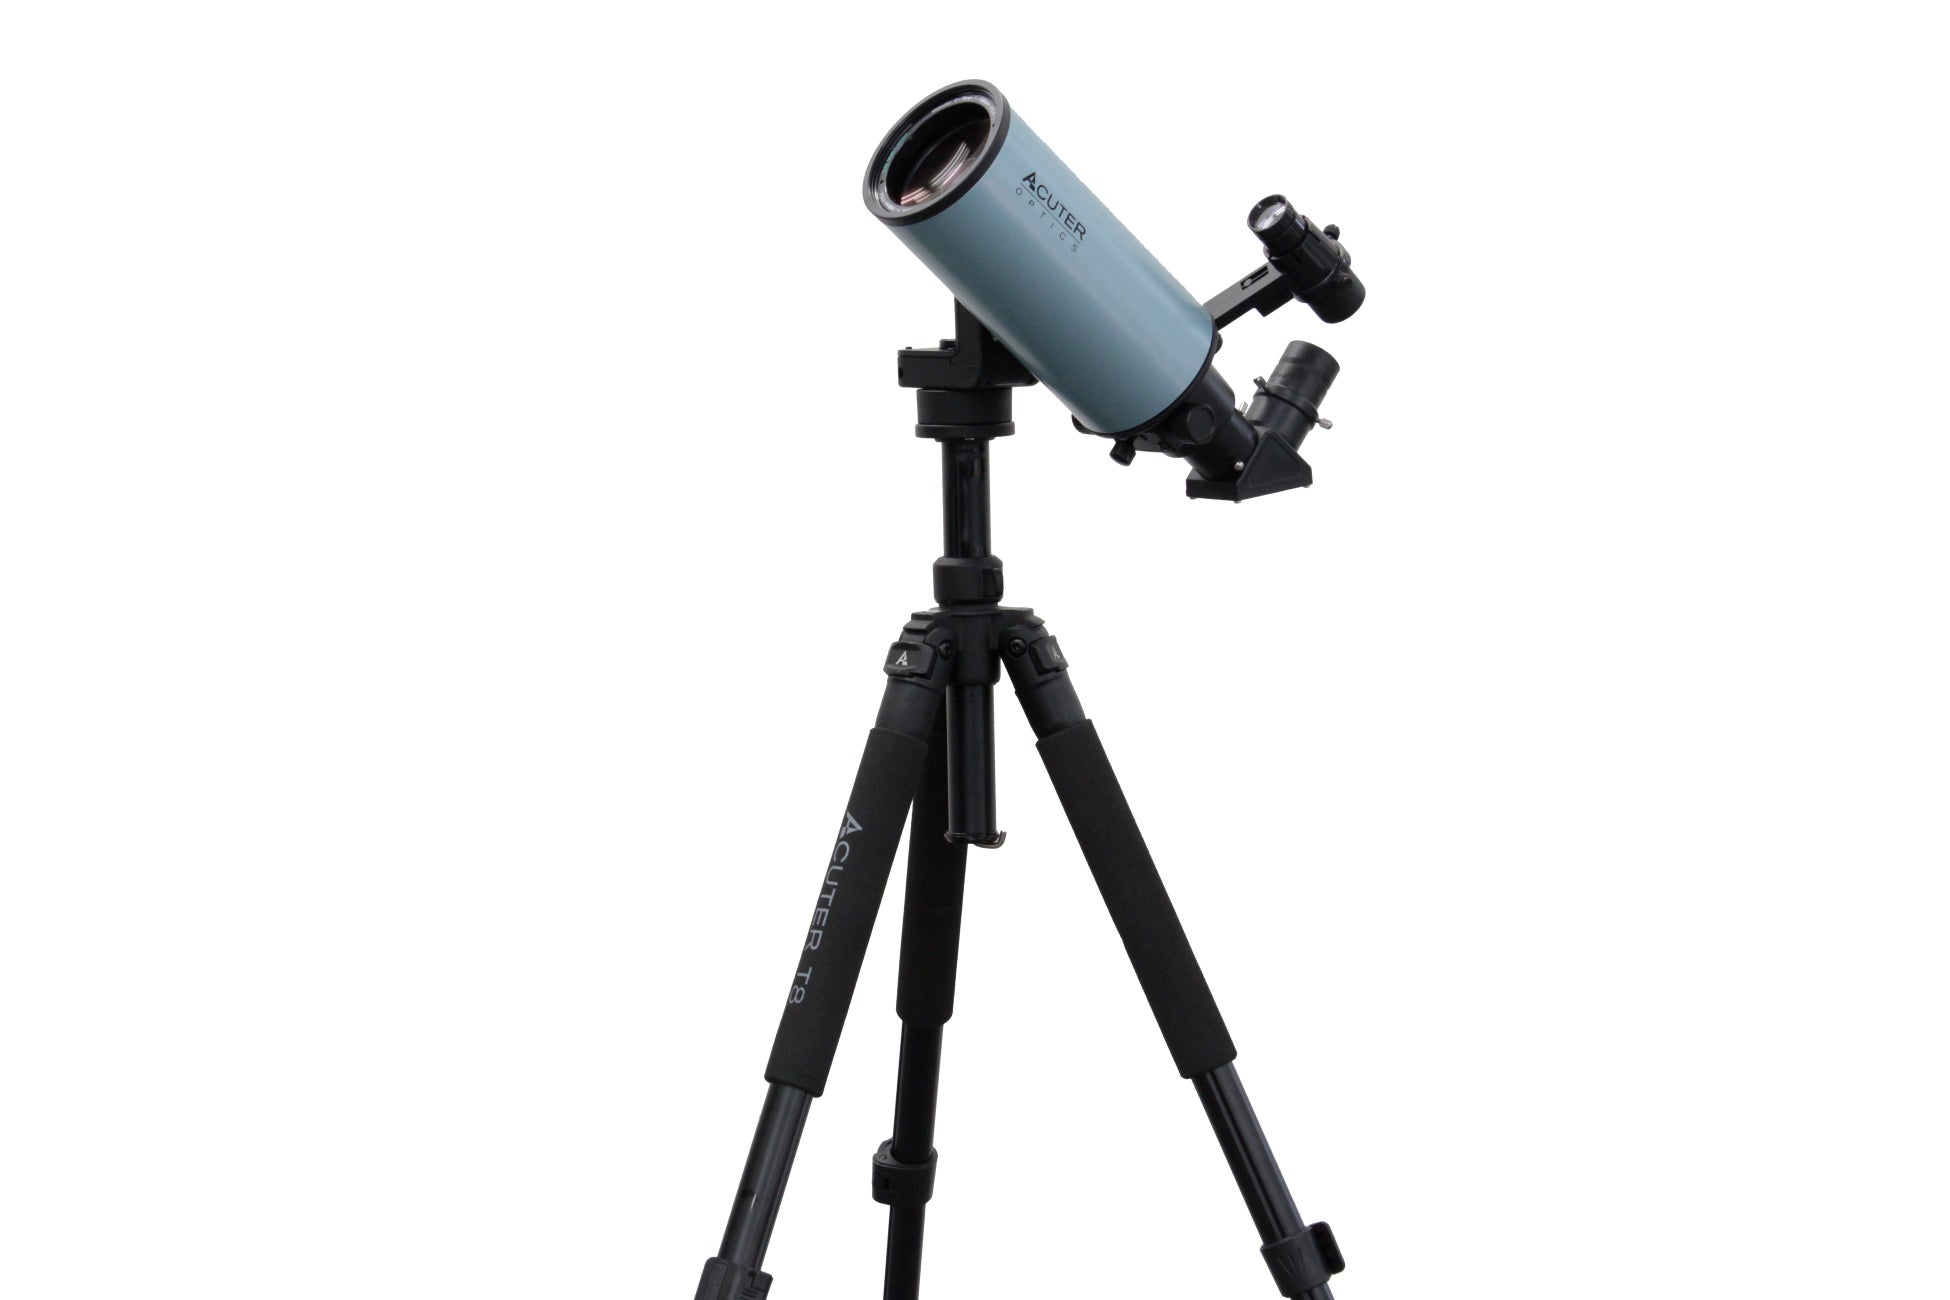 コンパクトながら本格的な光学系を採用したビギナーに最適な天体望遠鏡「VOYAGER MAK70FAST」発売